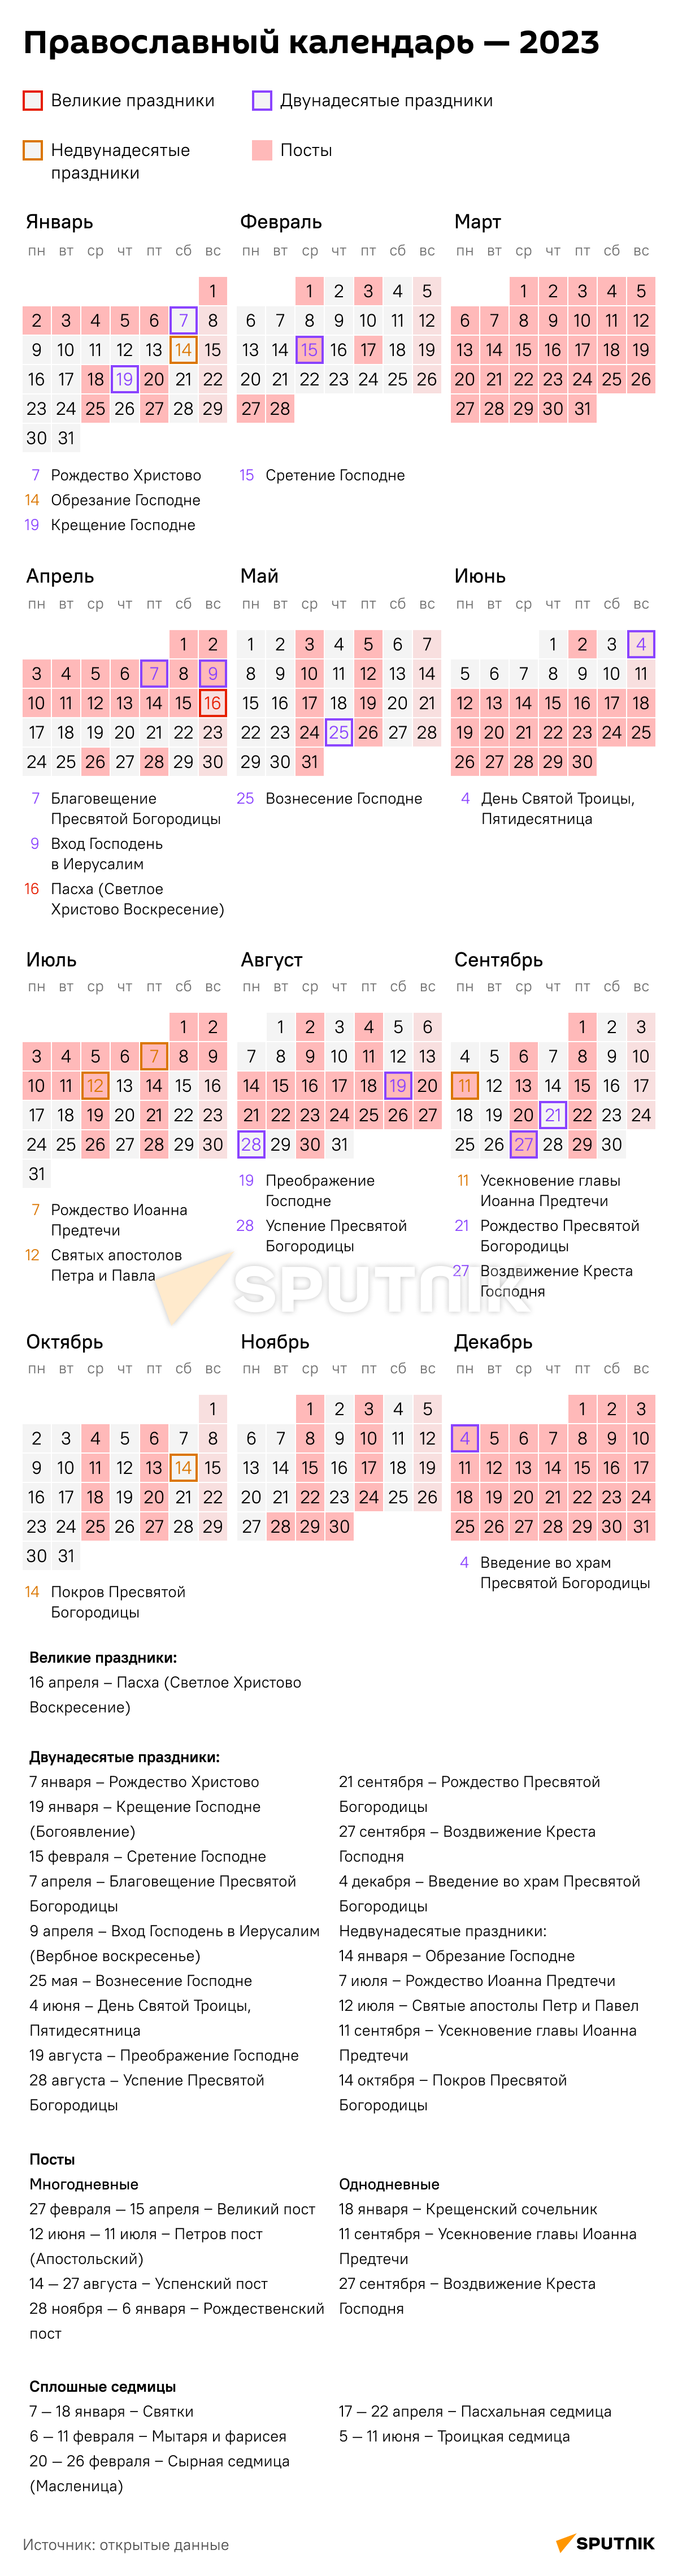 Православный календарь - 2023 - 30.11.2020, Sputnik Таджикистан